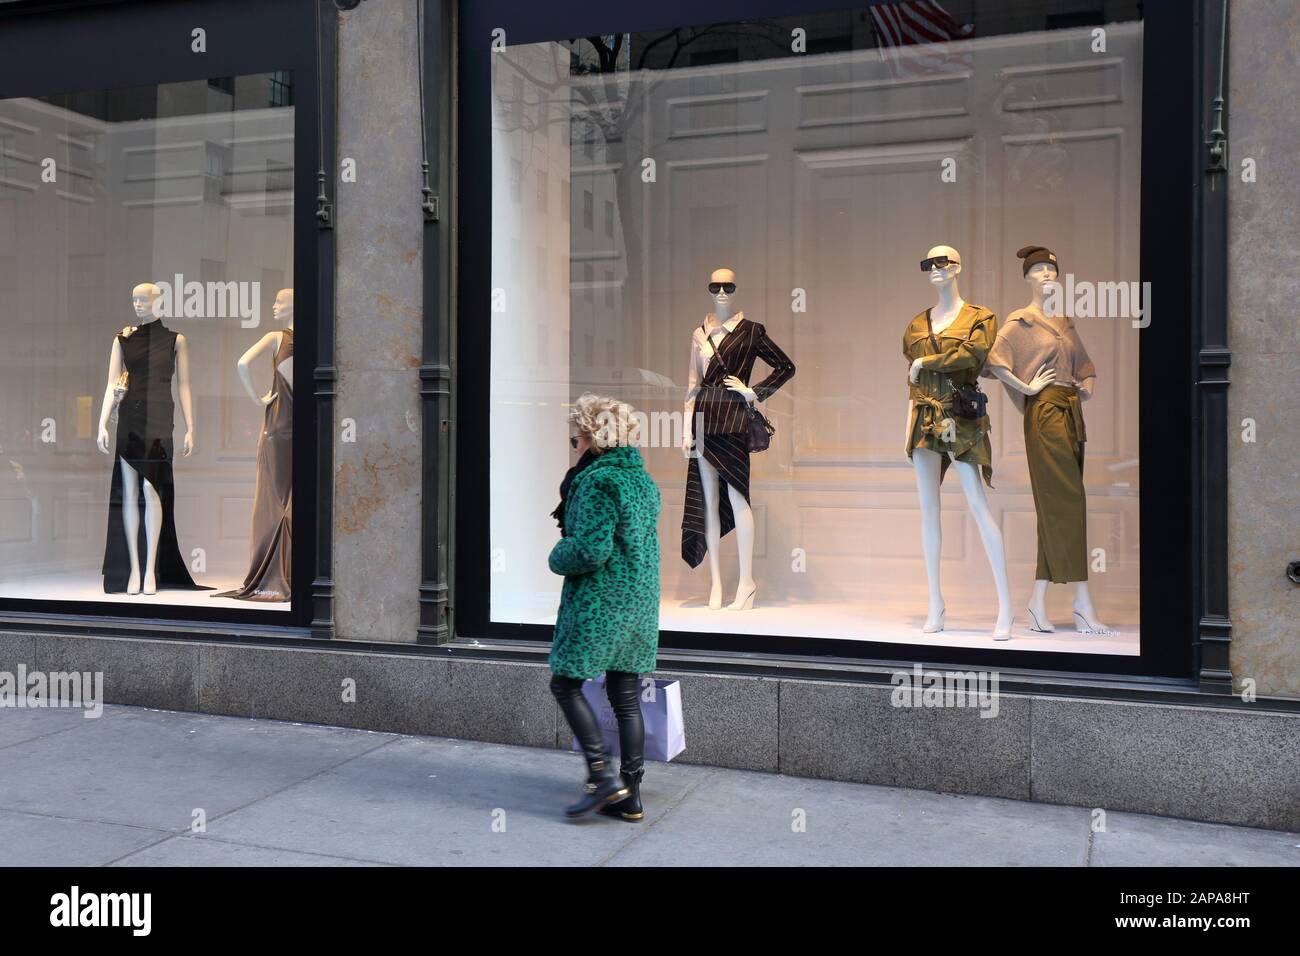 Eine Person mit grünem Kunstfellmantel mit Leopardenmuster und einer Einkaufstasche von Bergdorf Goodman in der Nähe der Fenster der Sak Fifth Avenue (21. januar 2020) Stockfoto